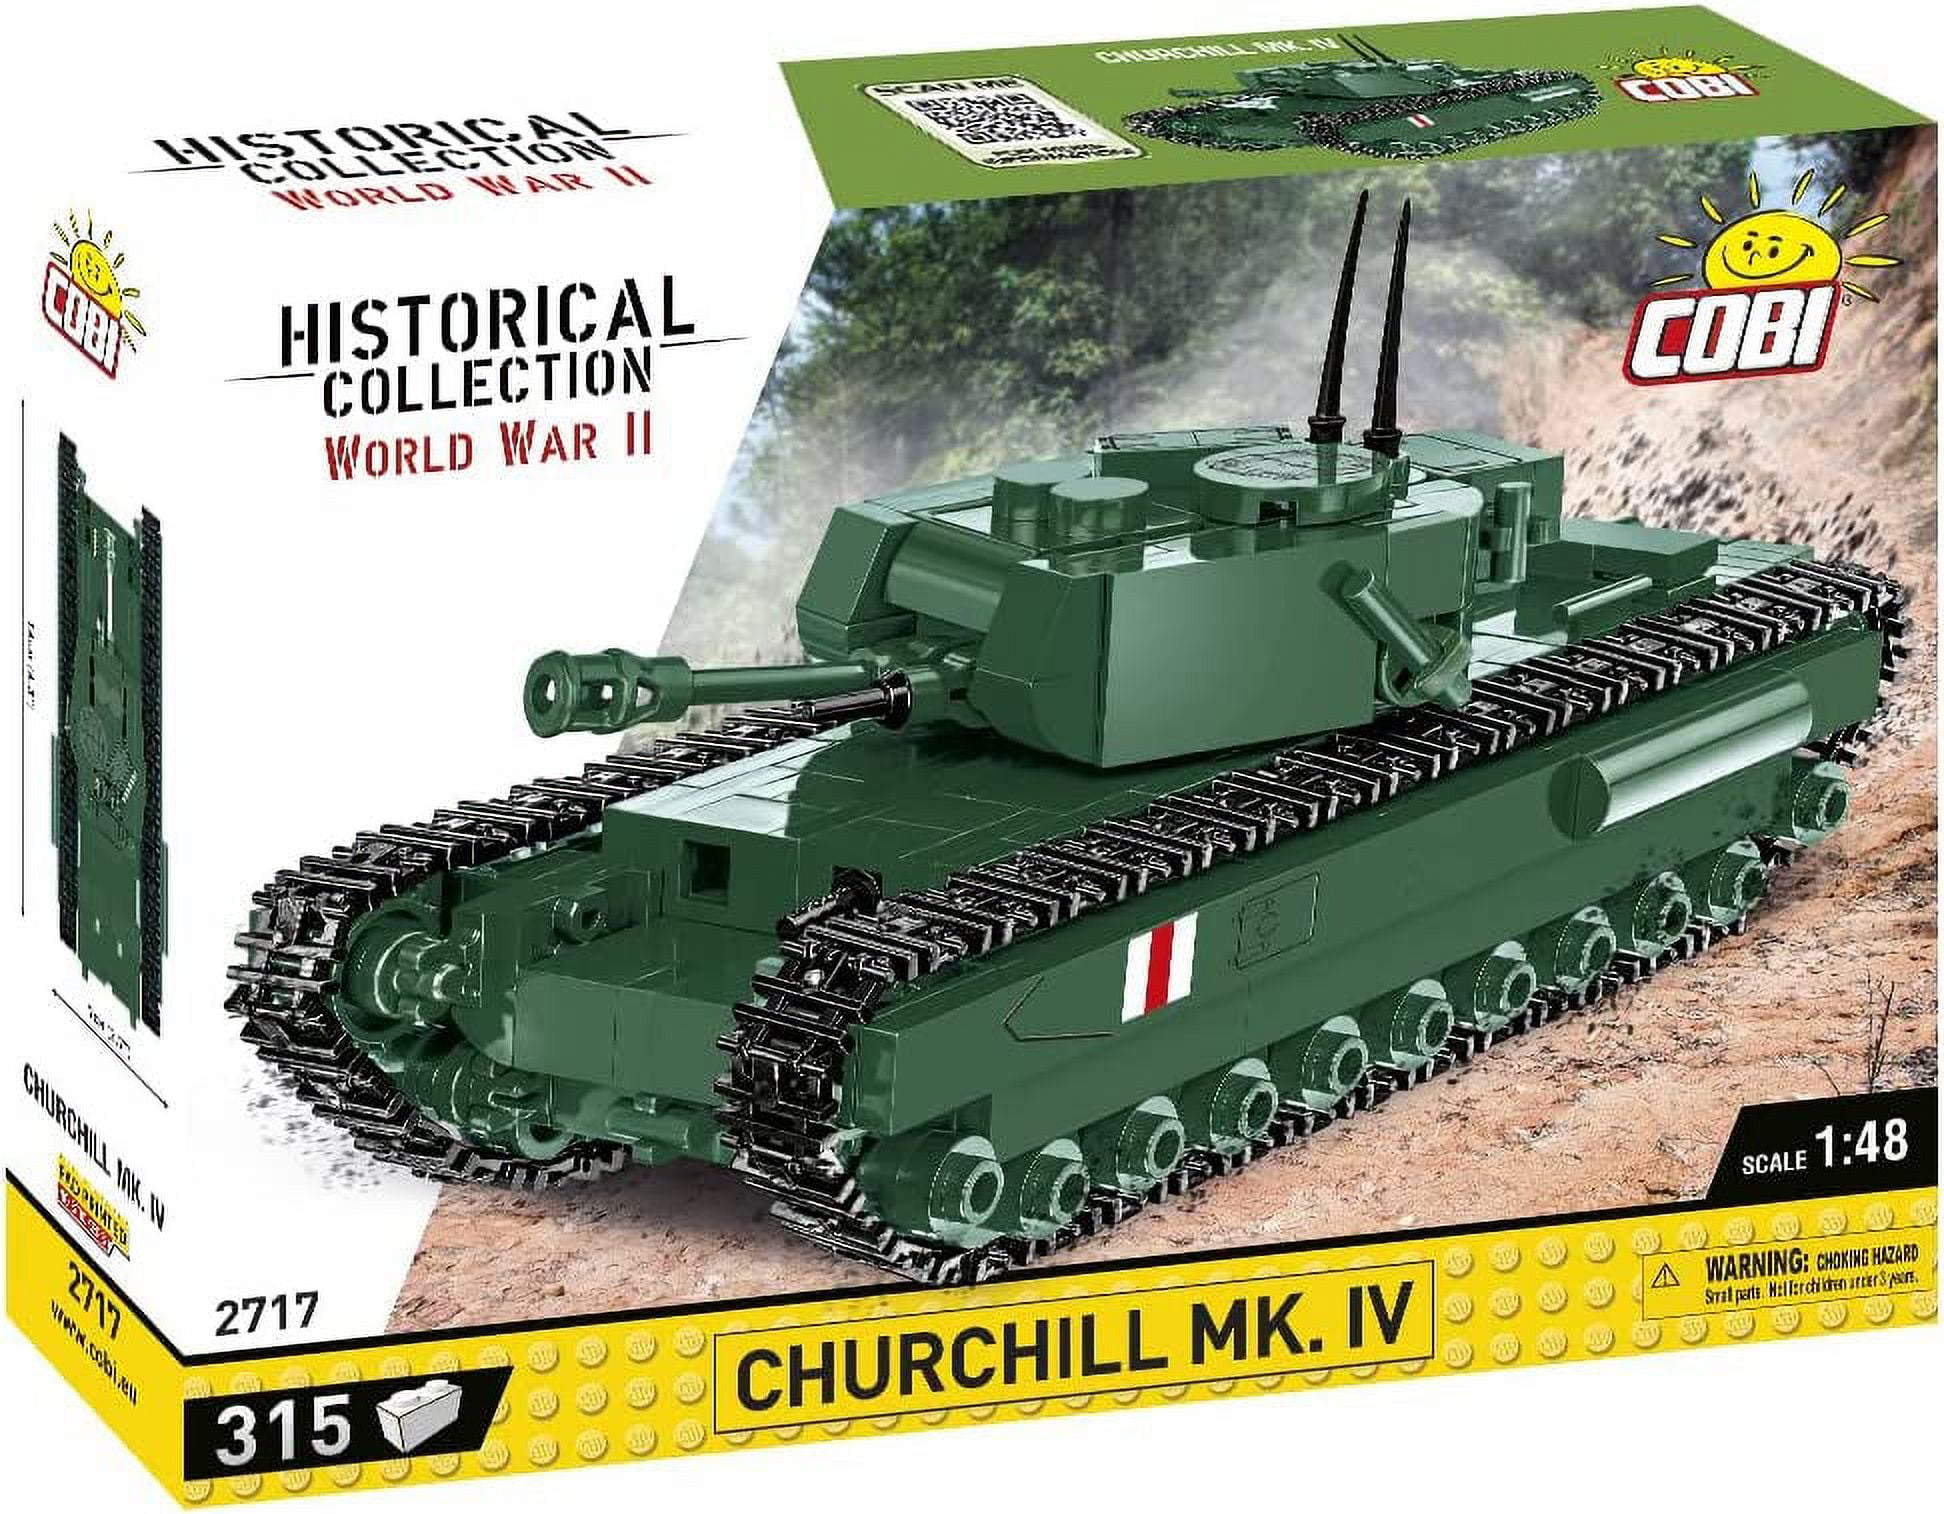 COBI Historical Collection World War II Churchhill MK. IV Tank